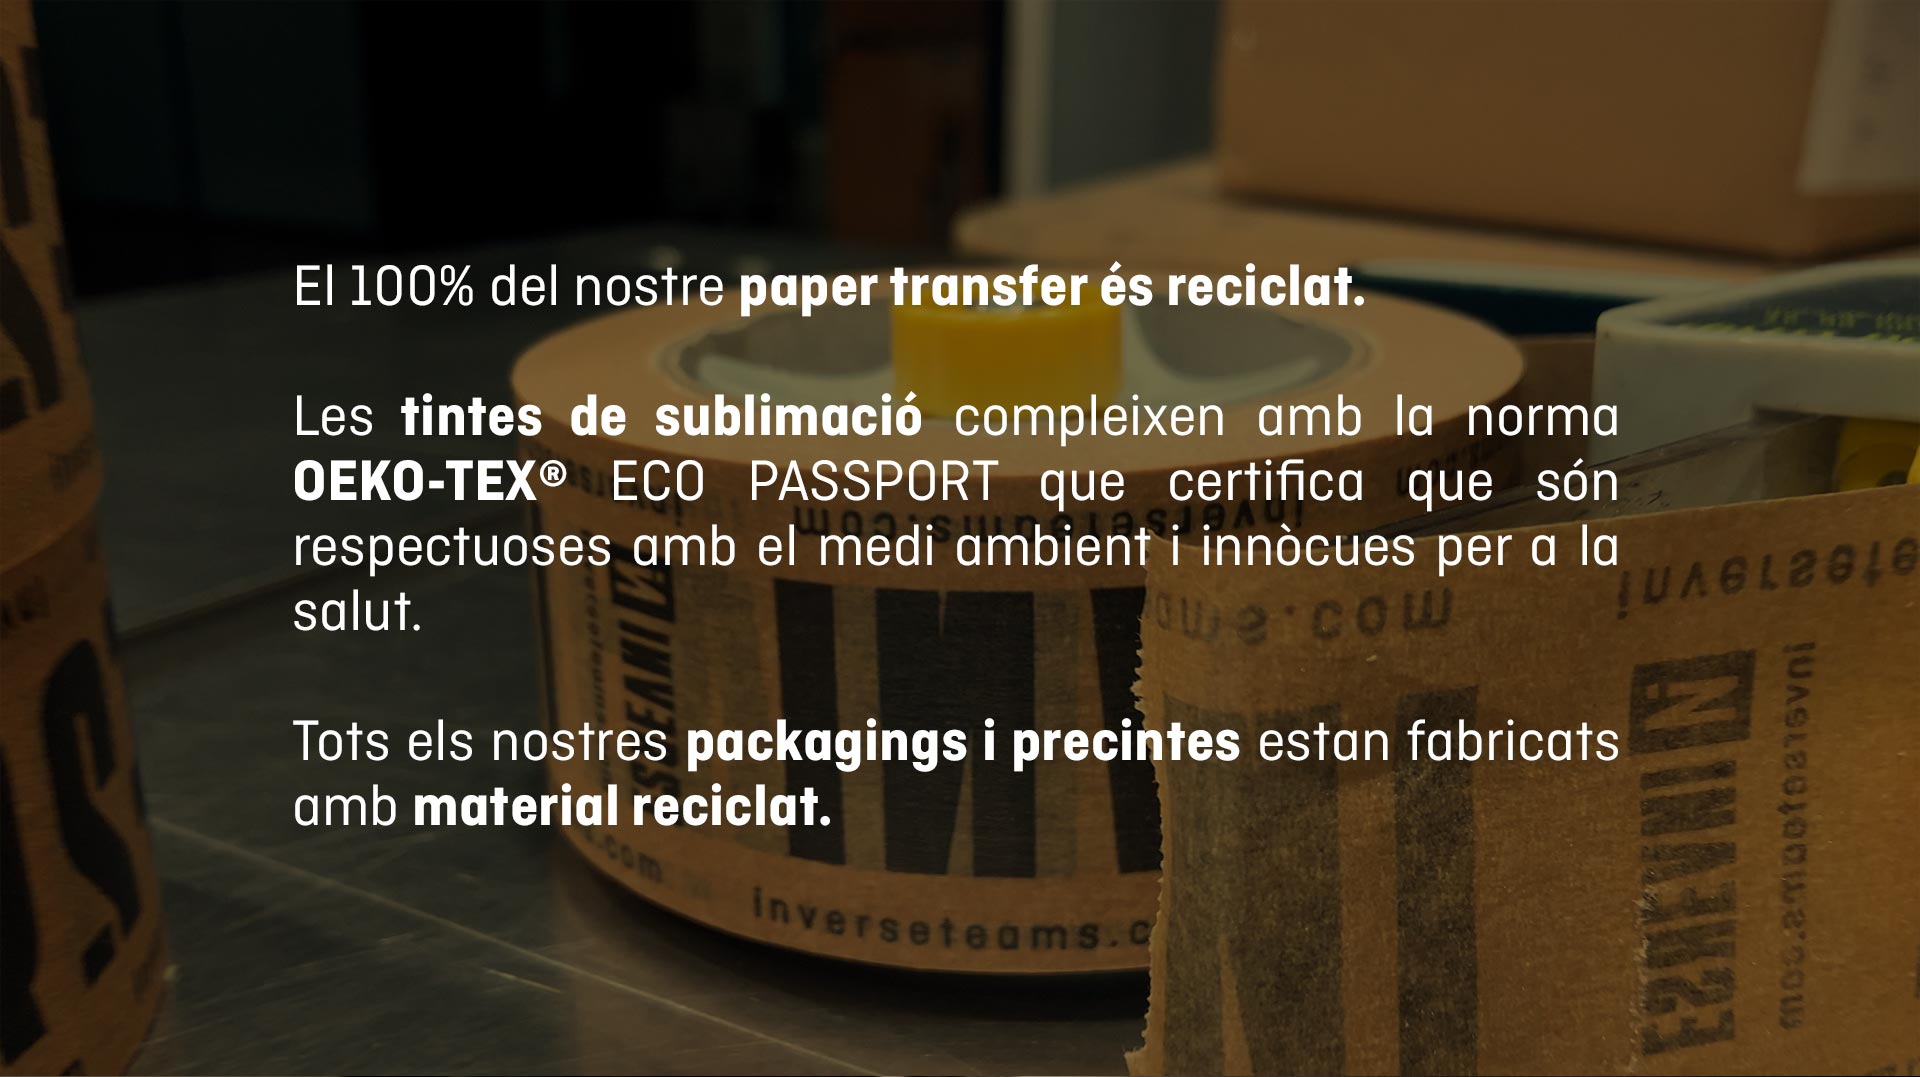 Paper transfer és reciclat. Packagings i precintes estan fabricats amb material reciclat.